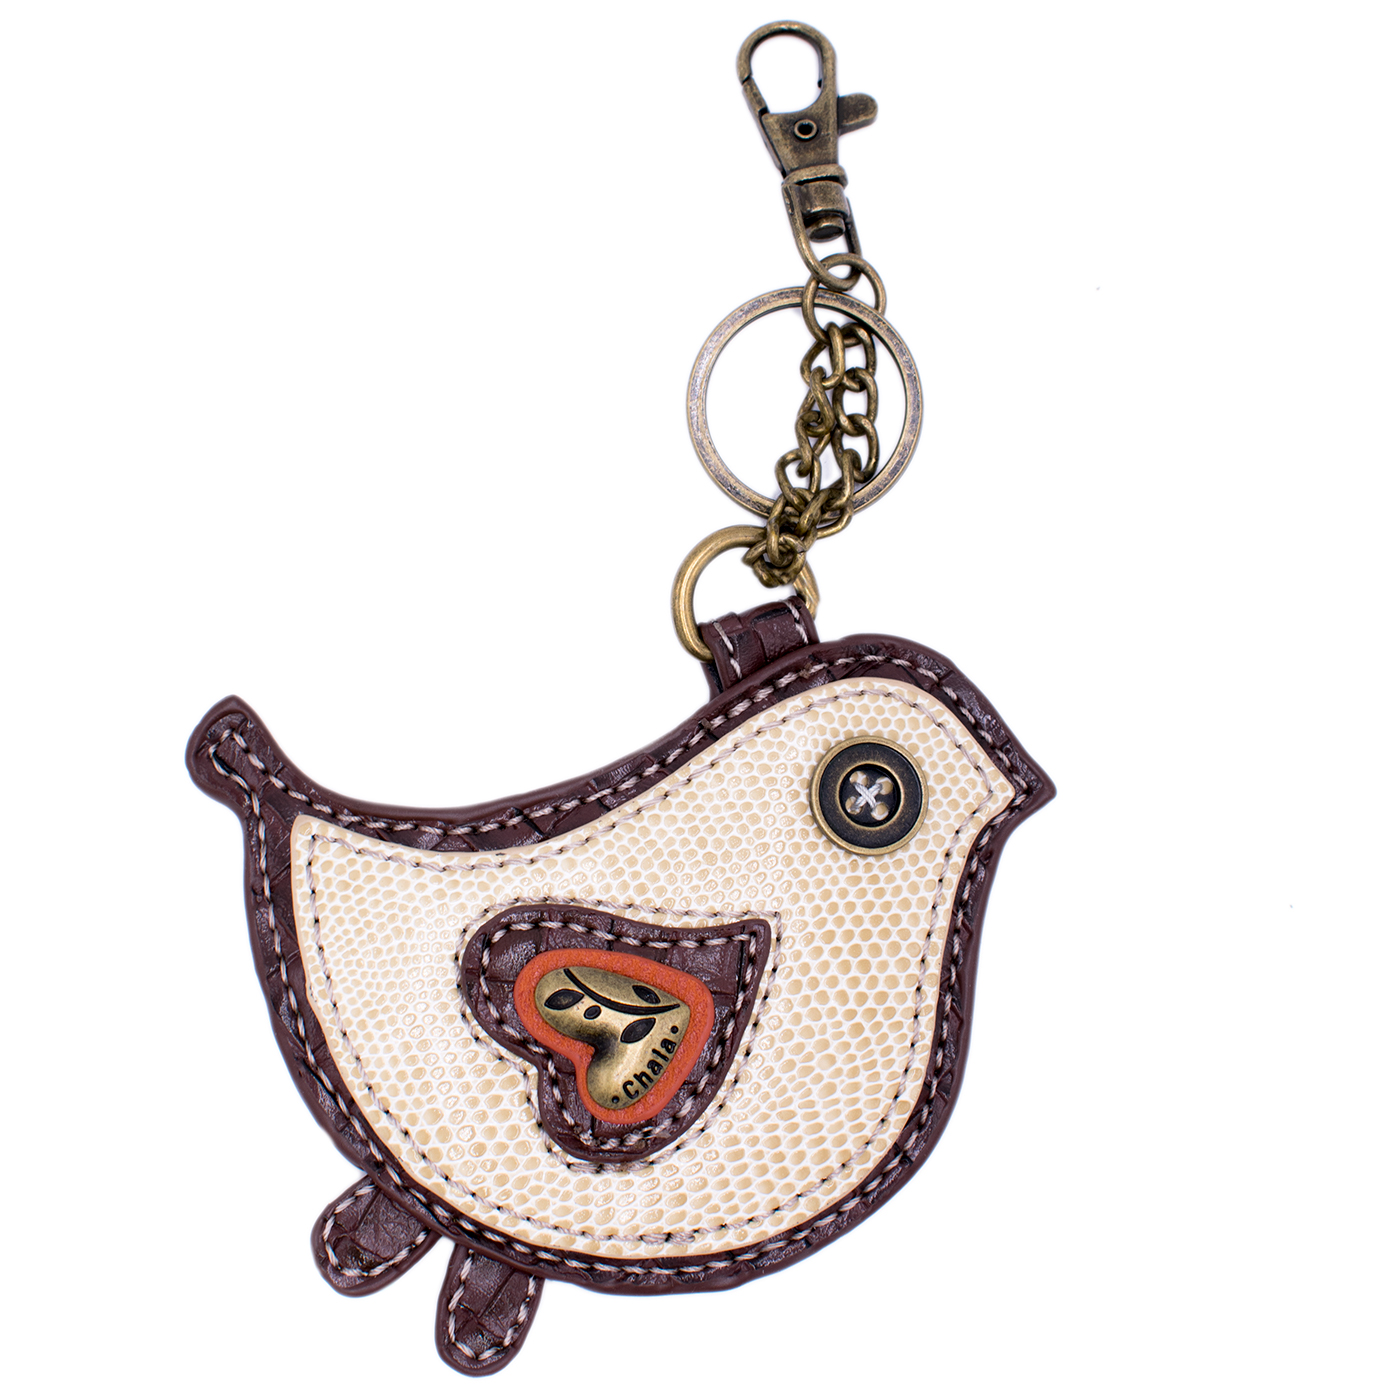 Bird Feet Key Fob, Car key Accessories, Bird Lover Gift, Handy Key